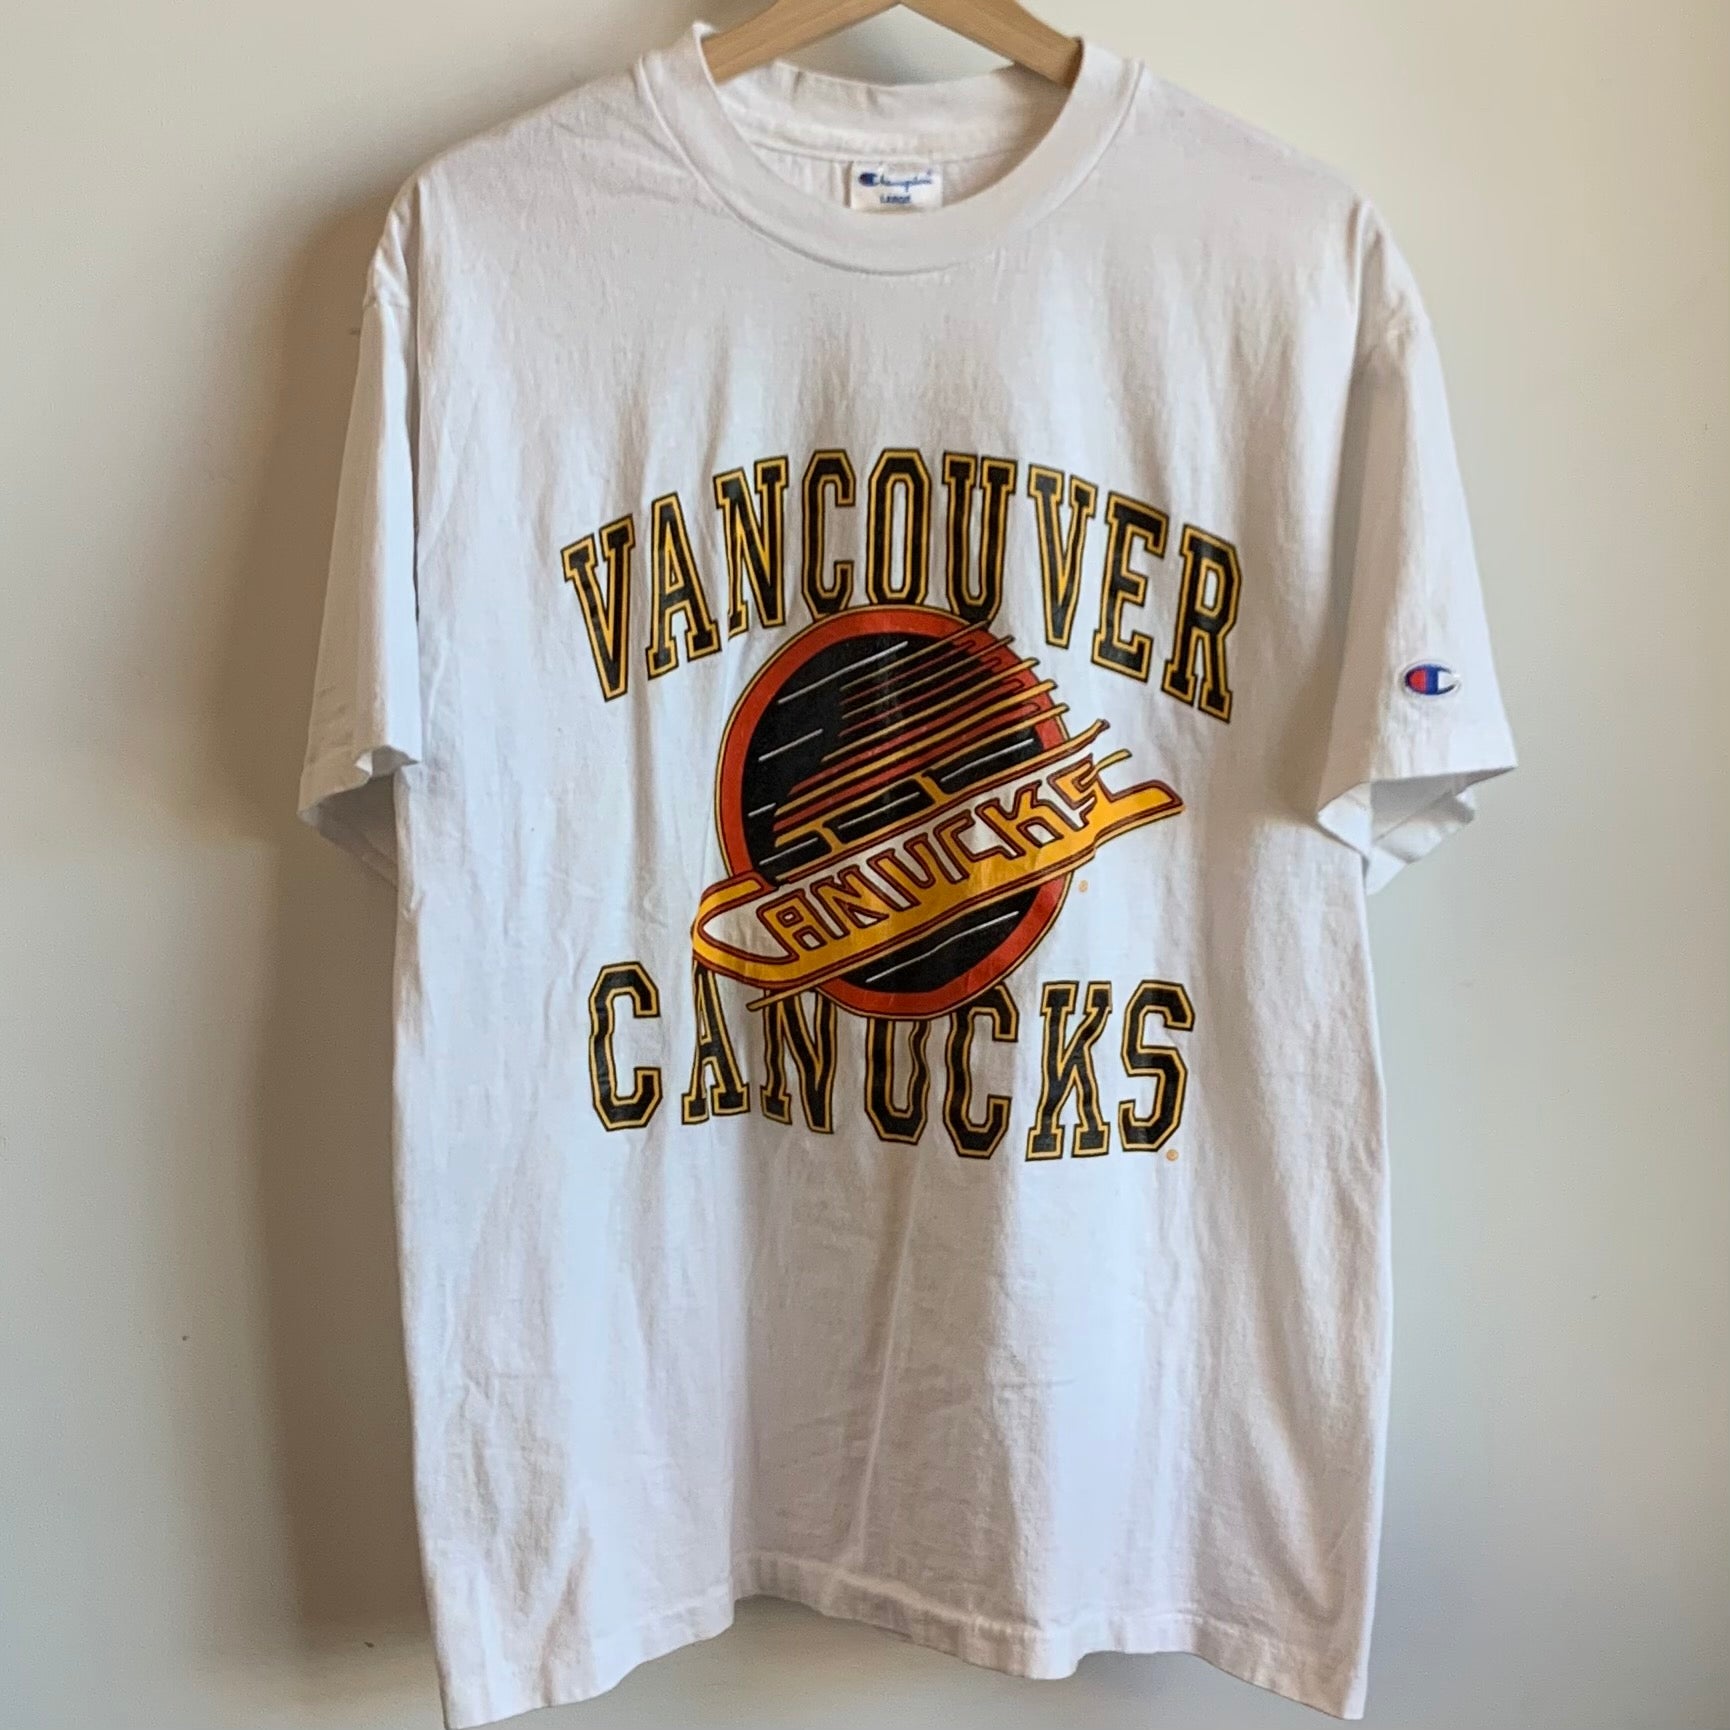 Vintage vancouver canucks shirt - Gem